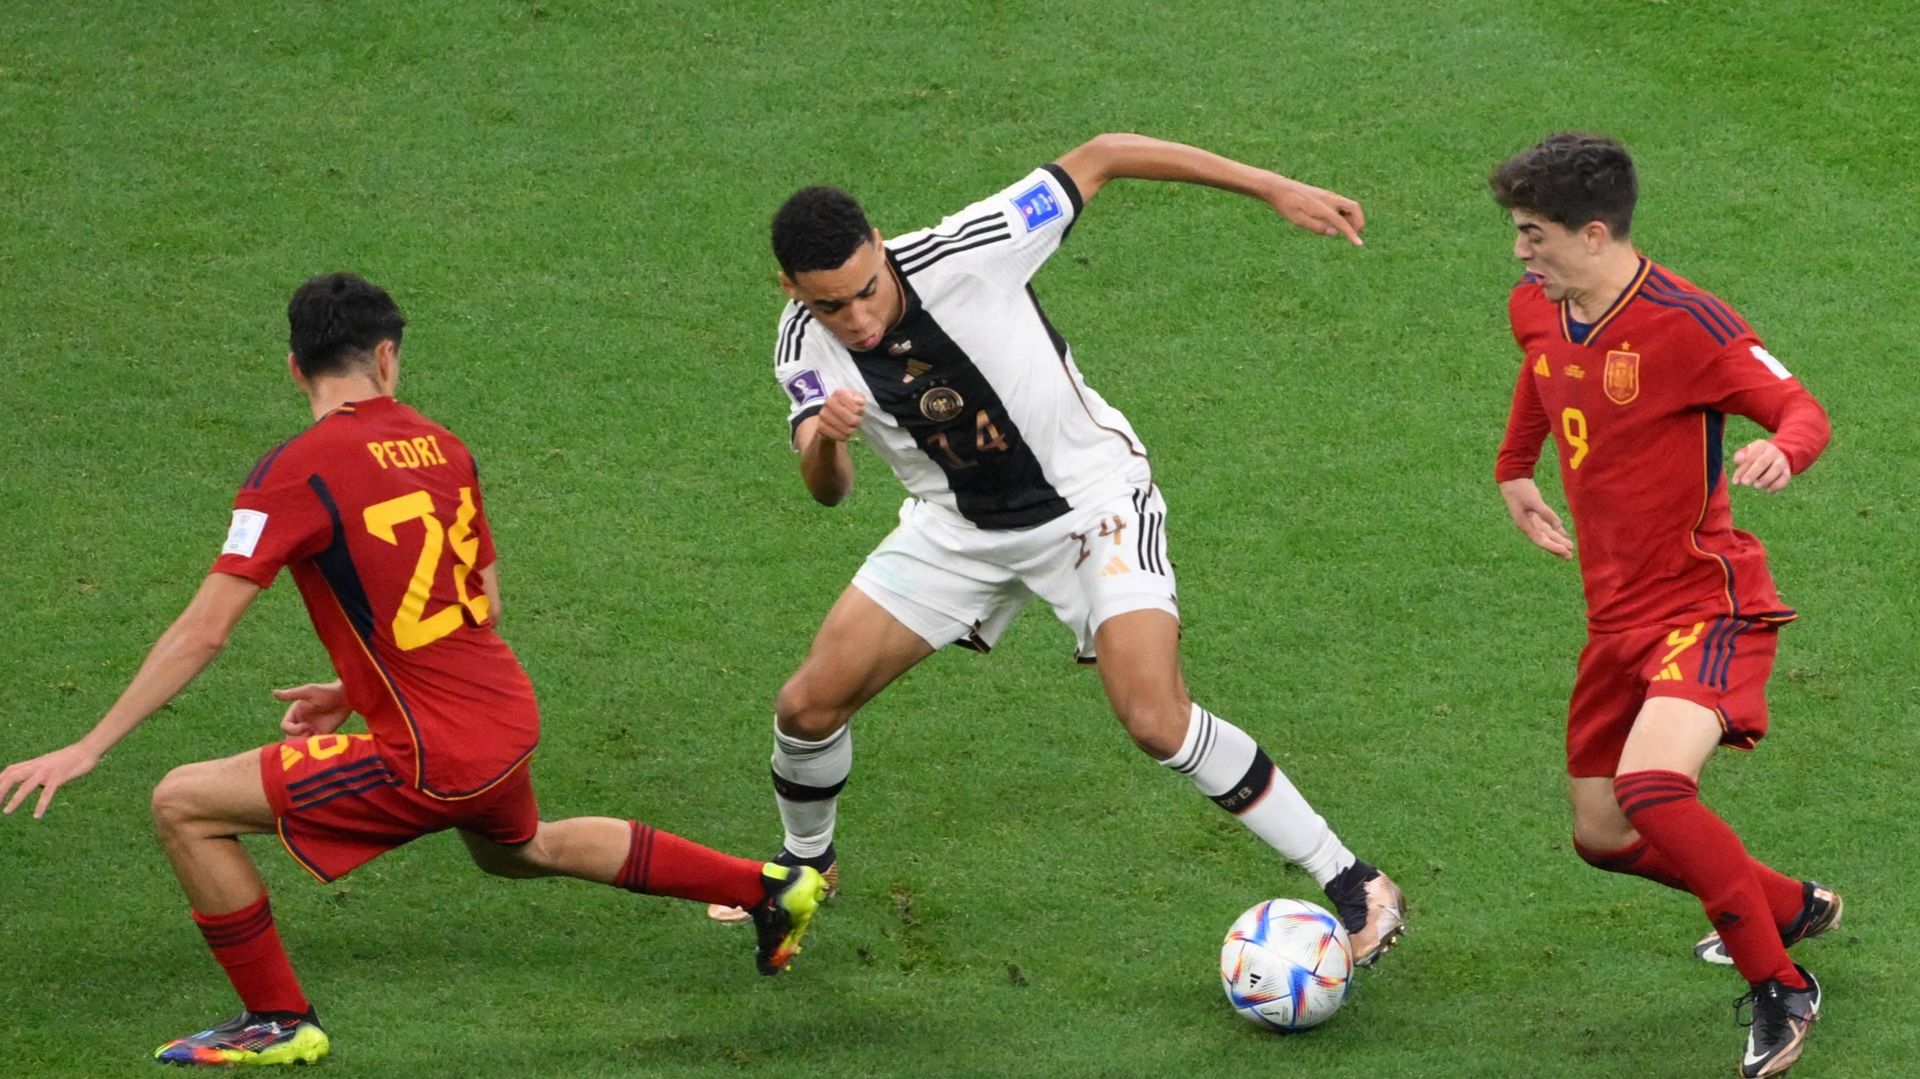 Jamal Musiala a été l’une des lueurs d’espoir ce dimanche pour l’Allemagne lors de son match face à l’Espagne.